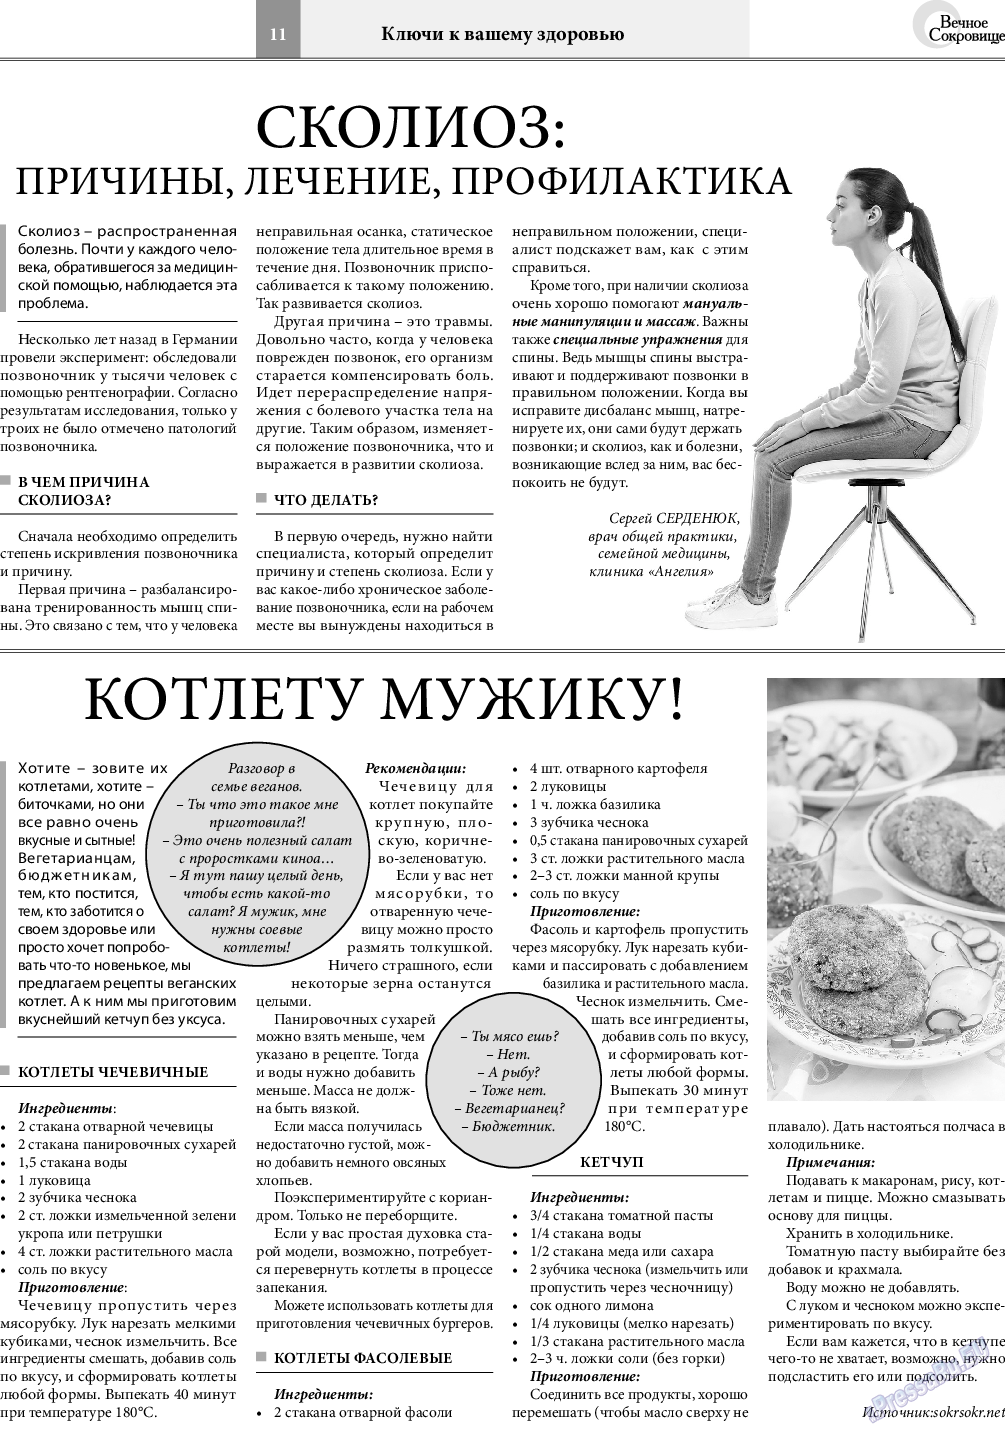 Вечное сокровище, газета. 2019 №2 стр.11